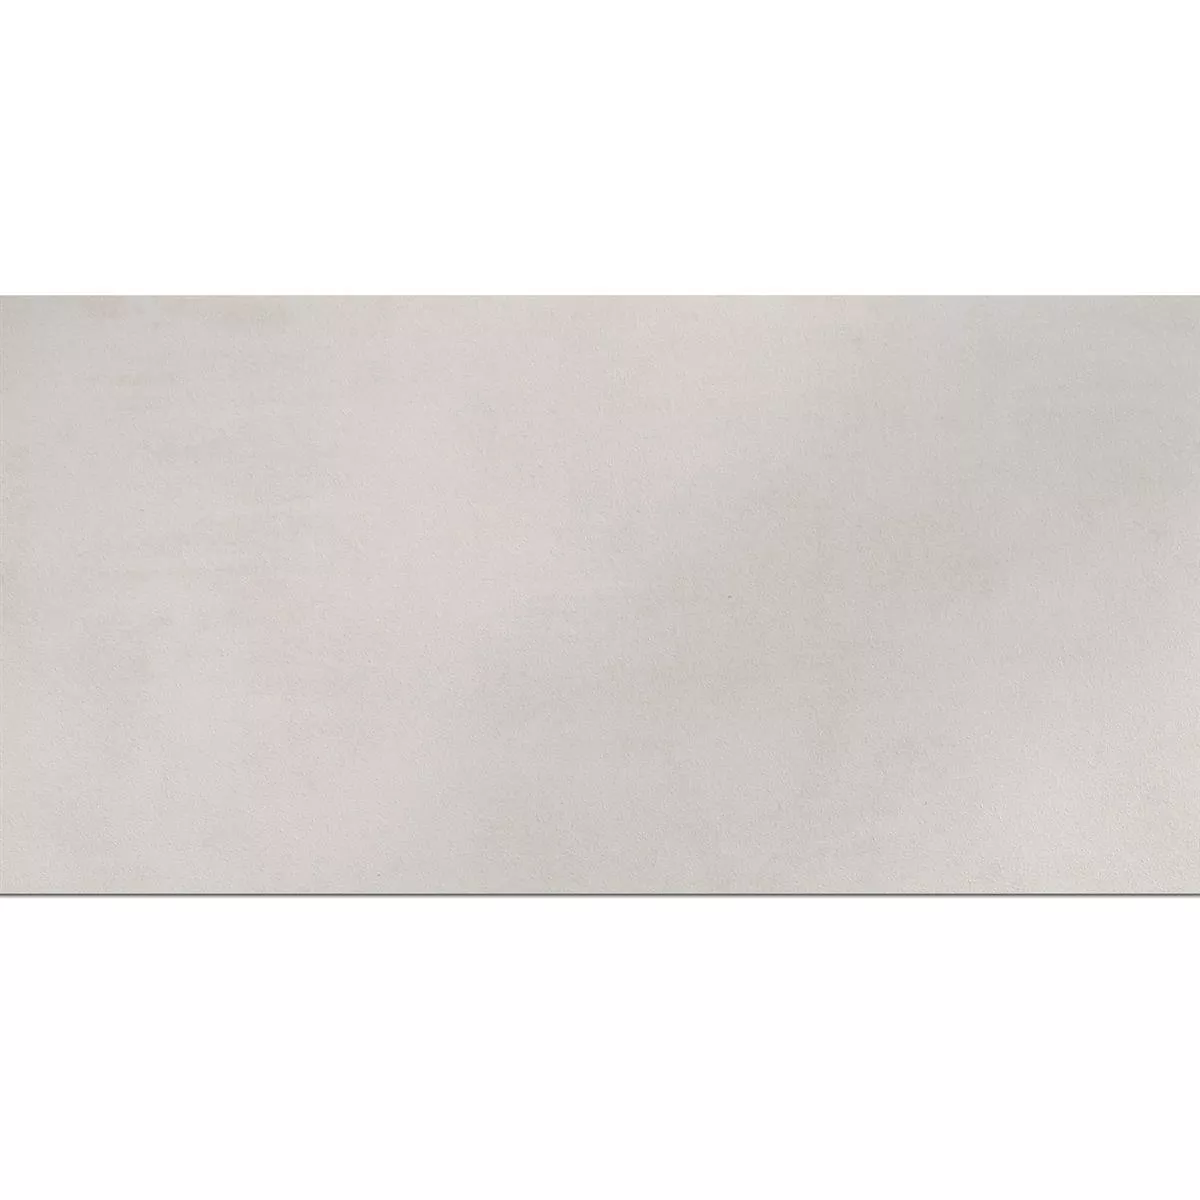 Piastrella Esterni Zeus Cemento Ottica White 30x60cm